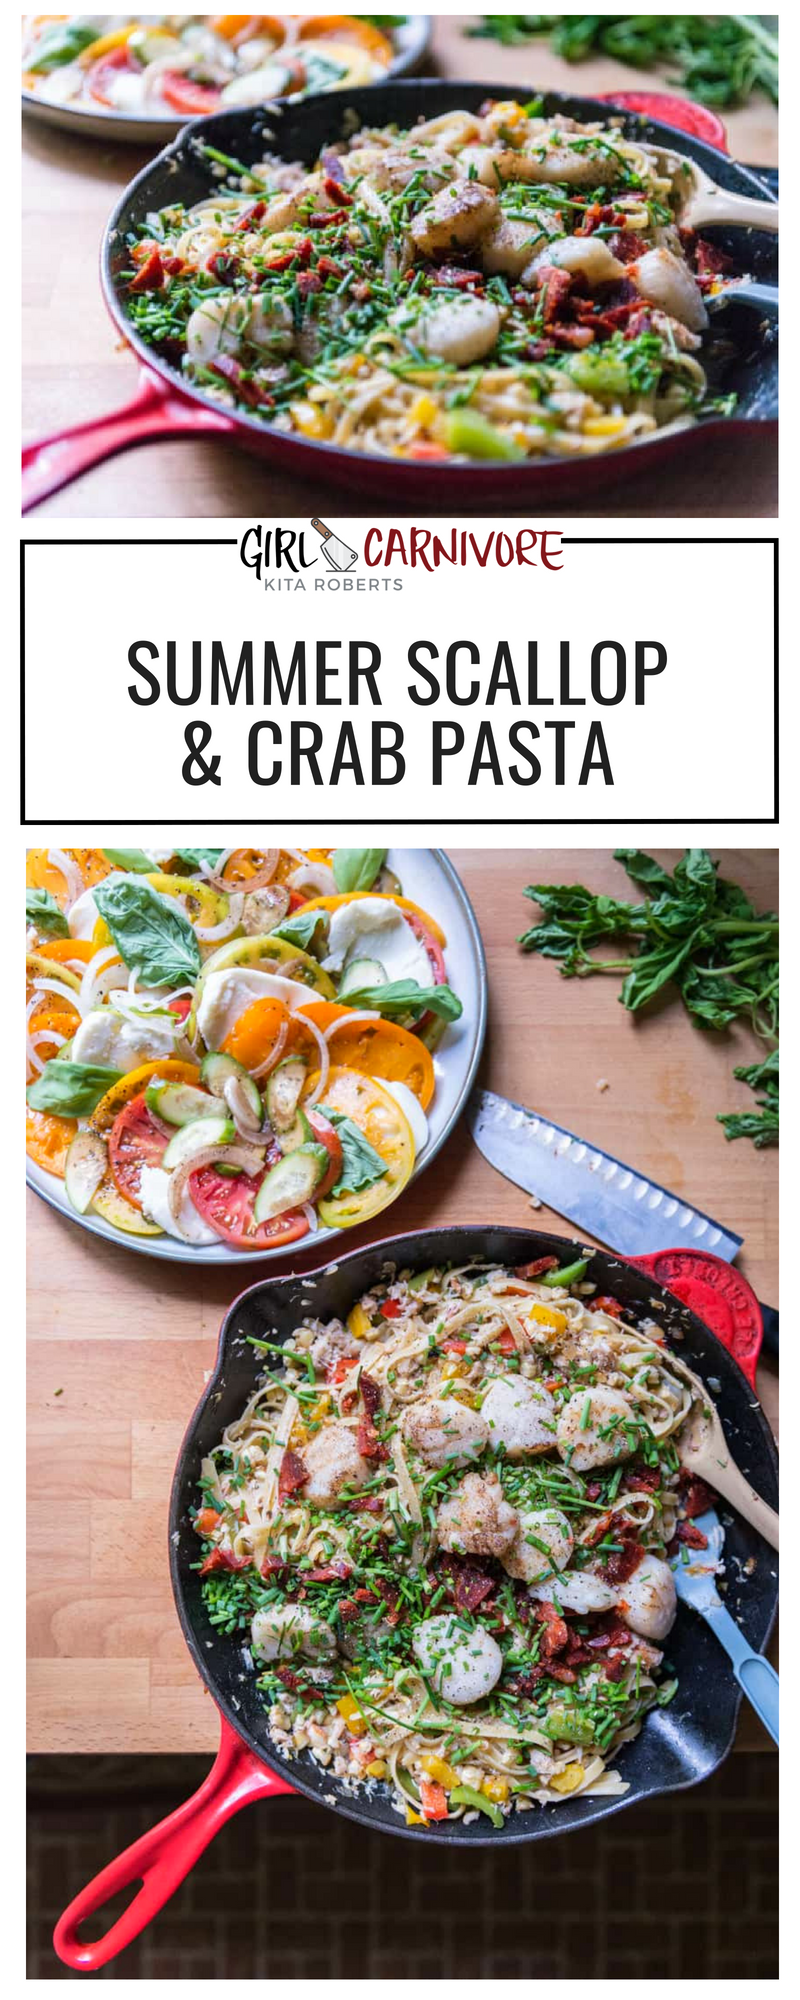 Summer Scallop and Crab Pasta | Kita Roberts GirlCarnivore.com